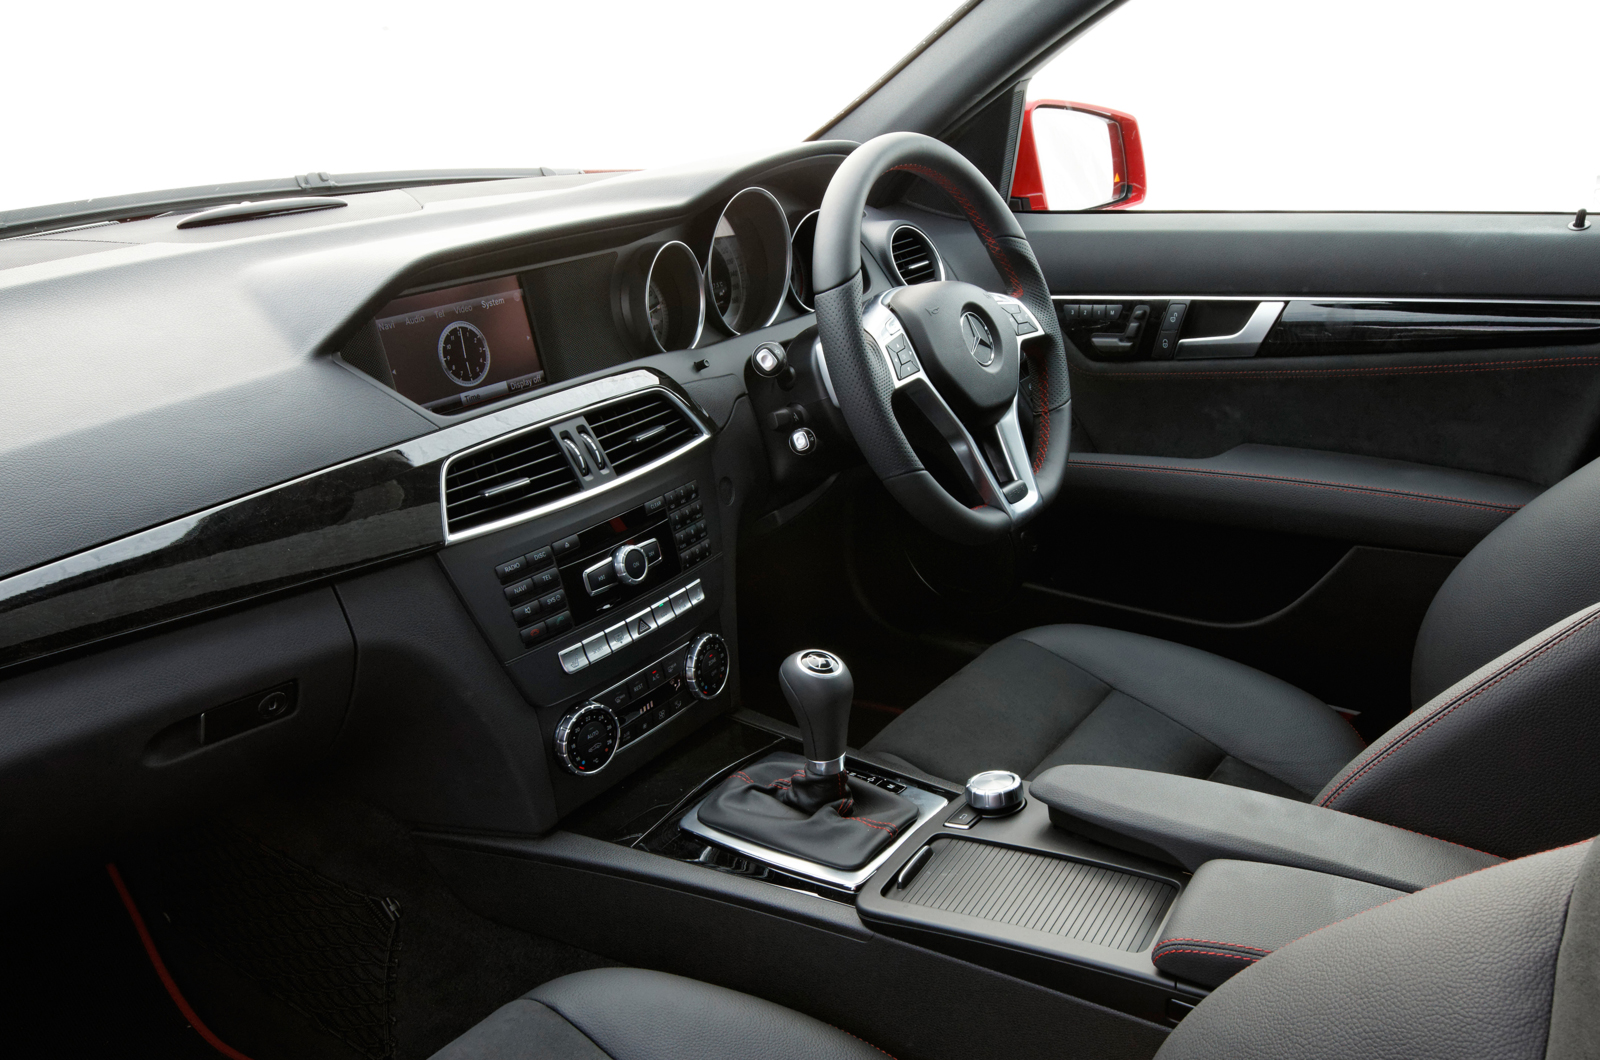 Mercedes-Benz C-Class interior